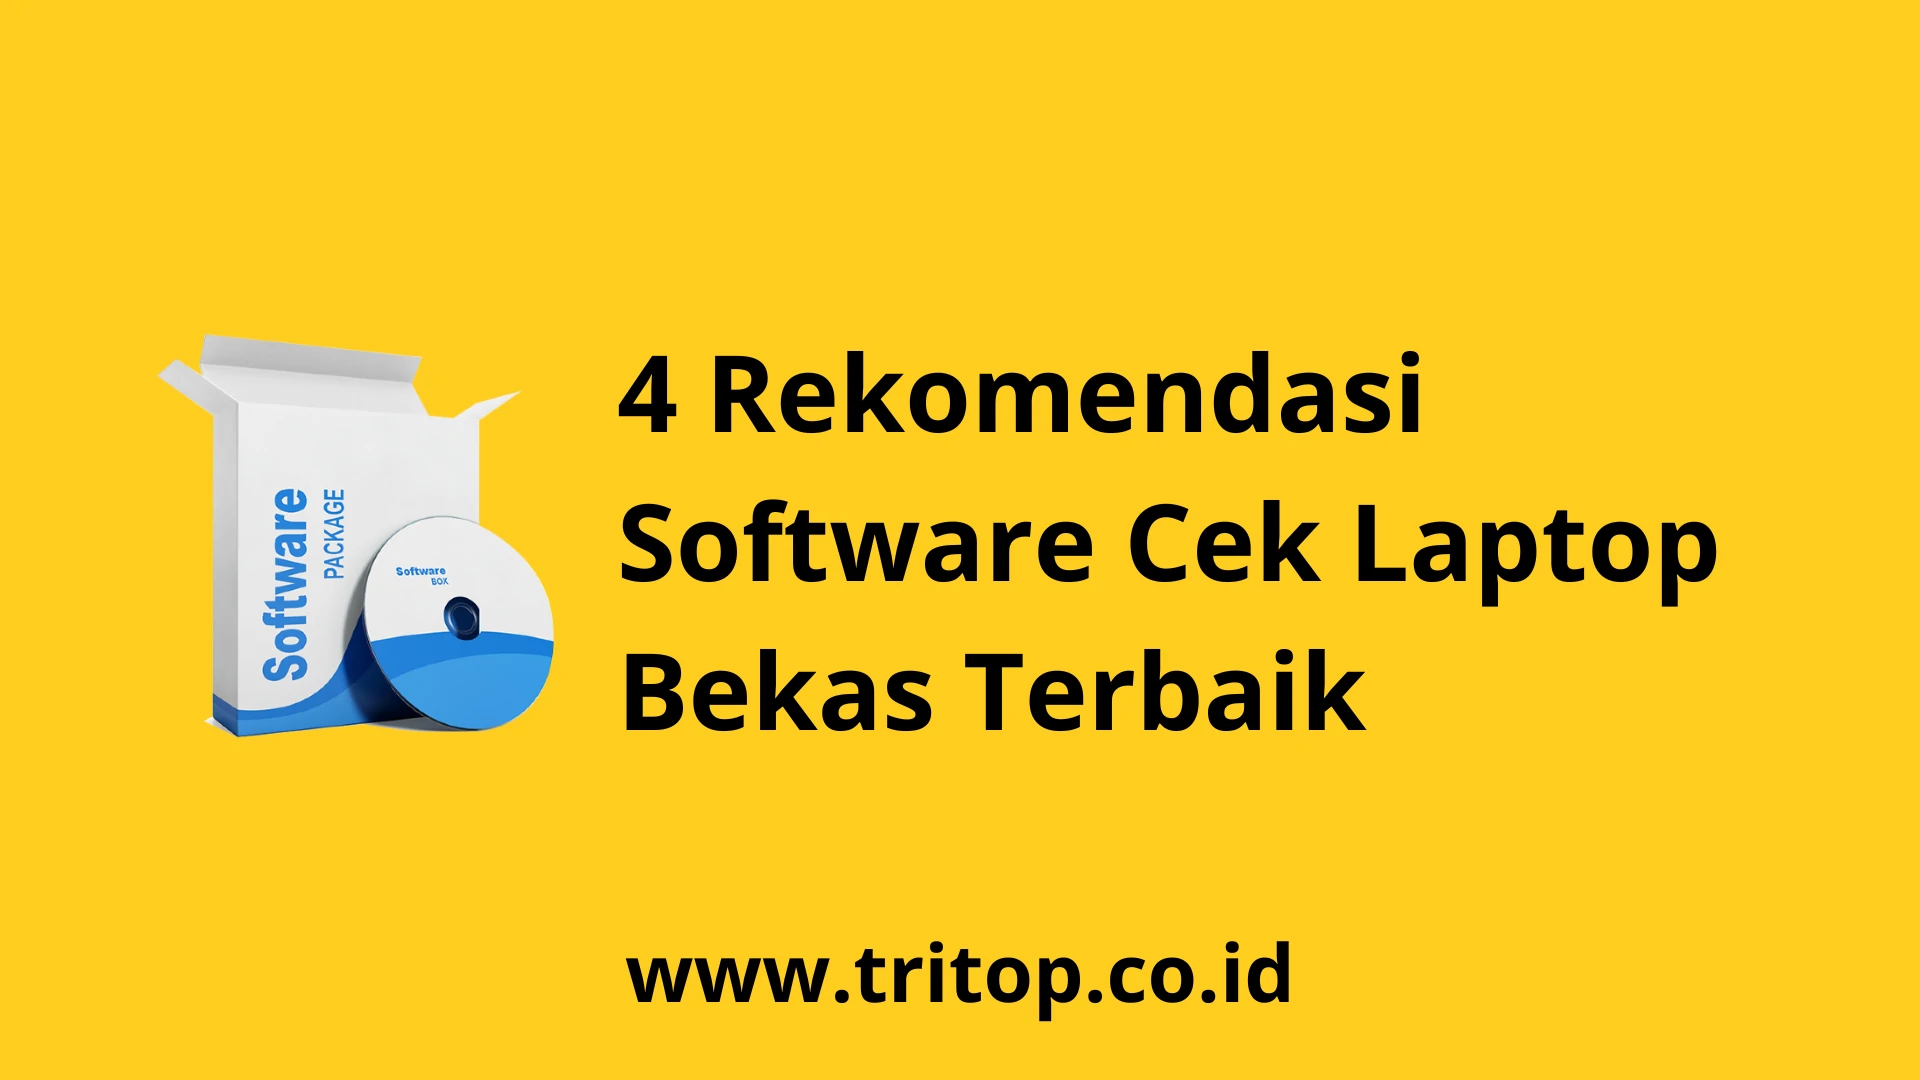 Software Cek Laptop Bekas www.tritop.co.id